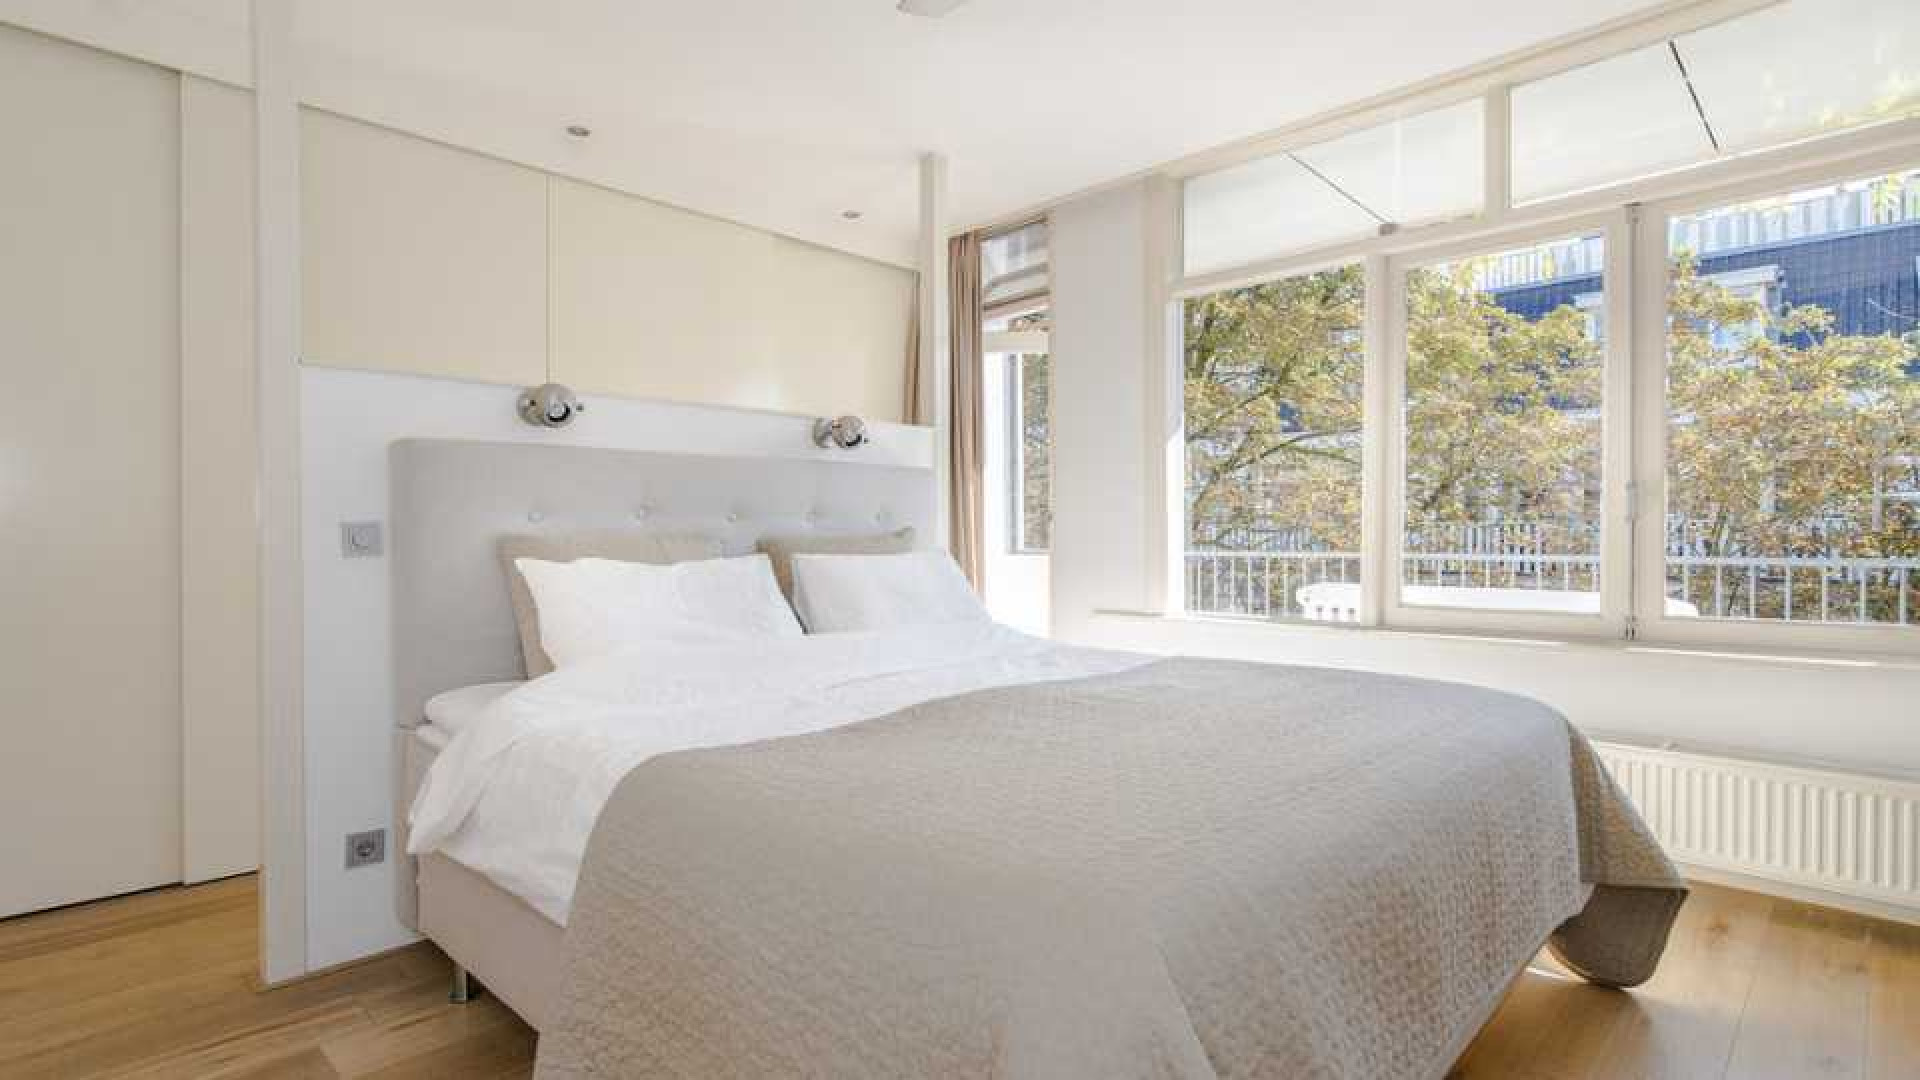 Armin van Buuren koopt luxe dubbel bovenhuis in Amsterdam Oud-West. Zie foto's 11